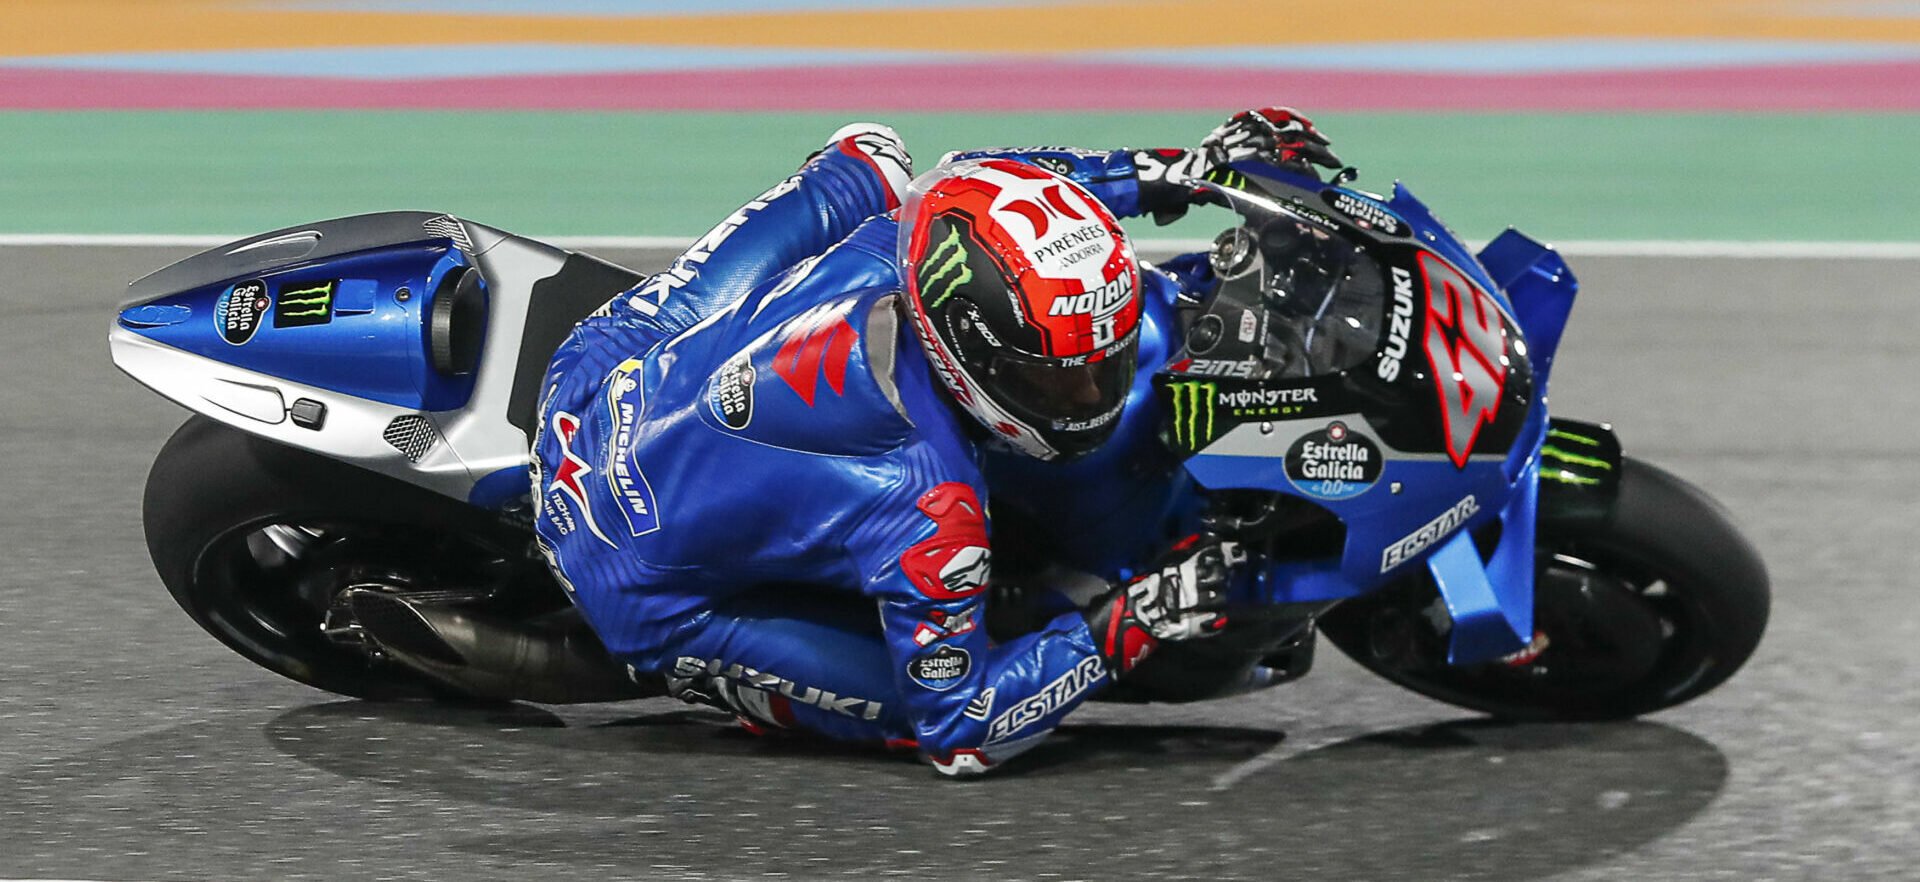 Suzuki Terdepan di FP2 MotoGP Qatar